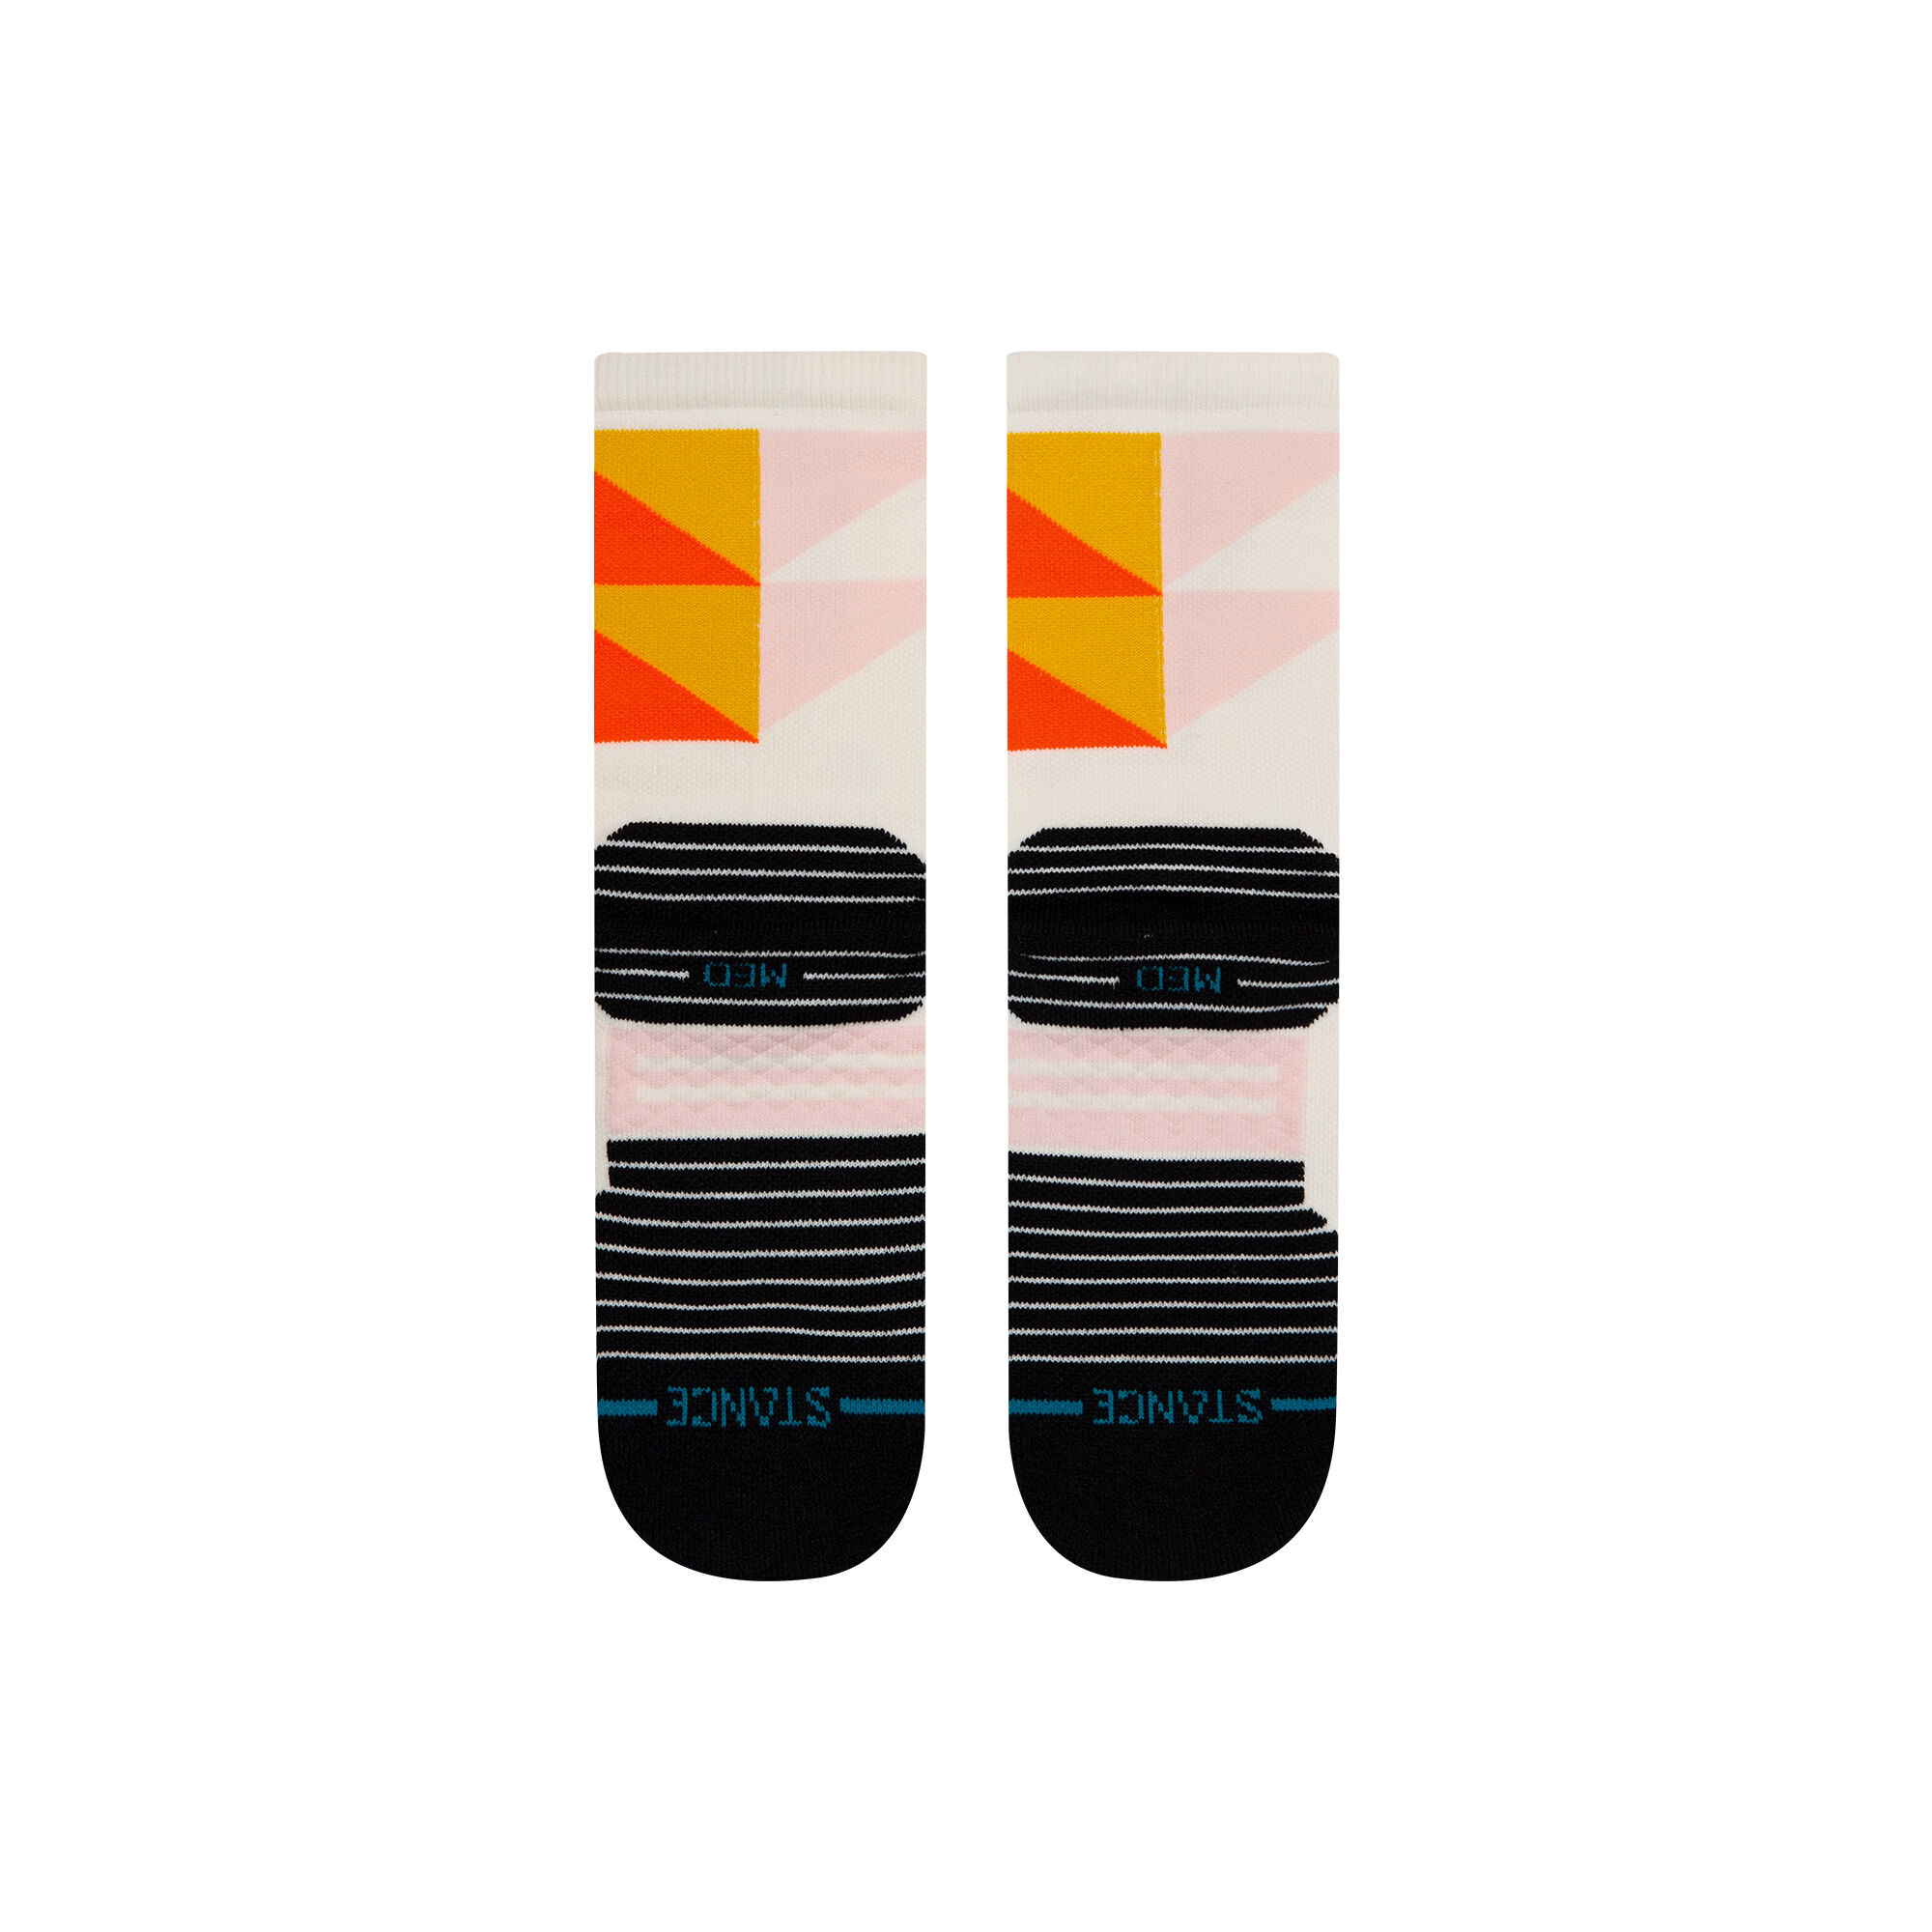 Stance Socks Classic Crew Socks Athletic Costine Con Terry Loop Supporto Di Arco Tallone Rinforzato E Senza Soluzione Di Continuità Le Dita Dei Piedi Di Chiusura 